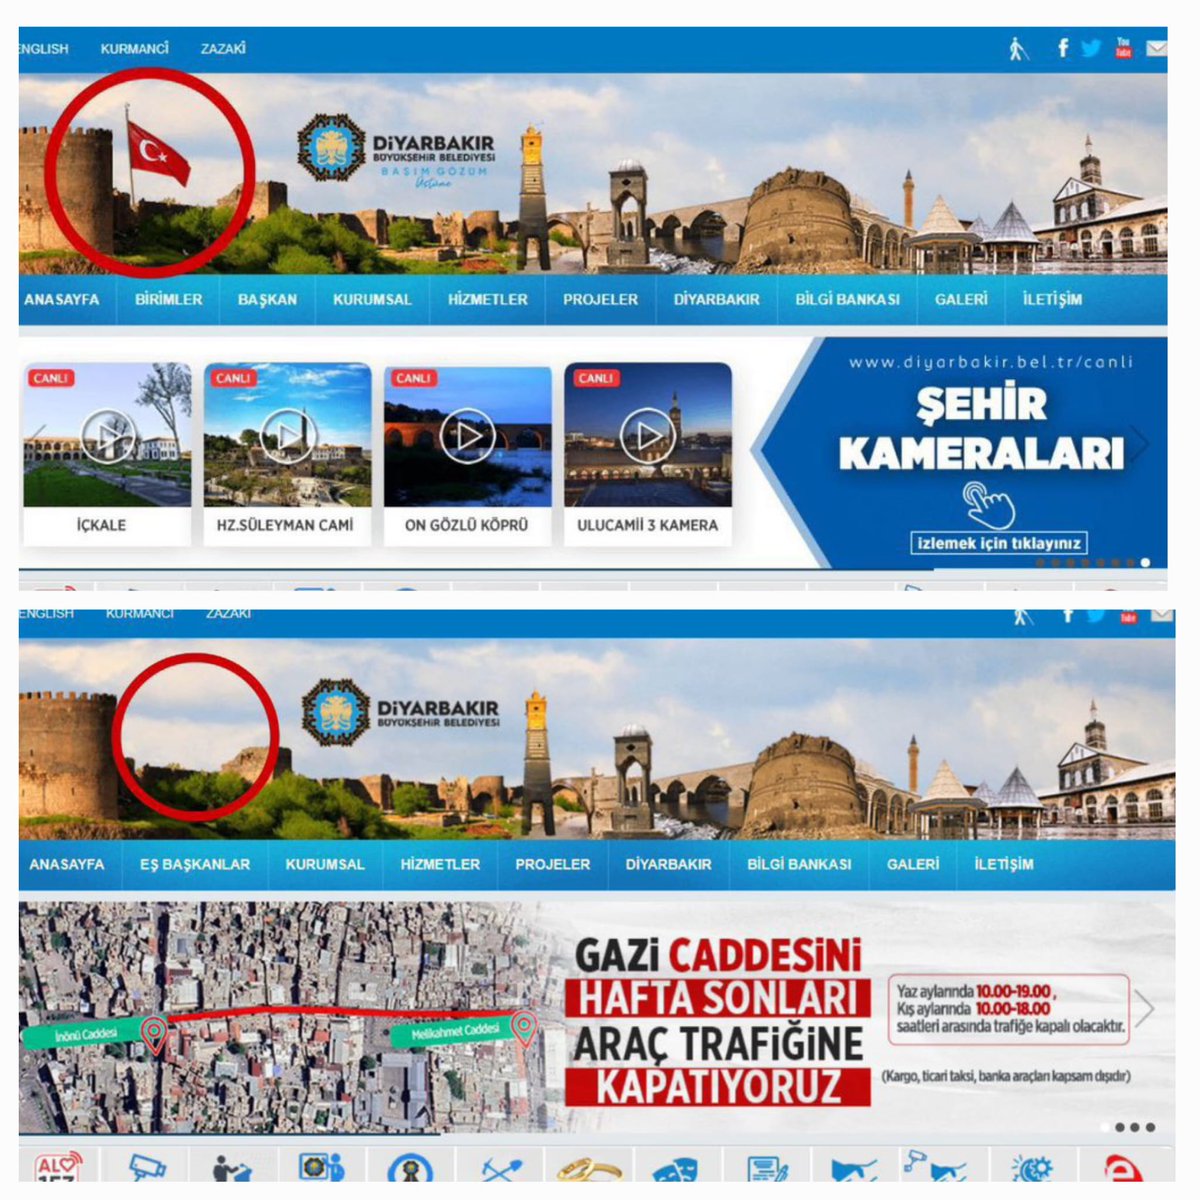 DEM Parti'den Türk Bayrağına Büyük Saygısızlık Diyarbakır Belediyesi, Dem Parti'ye geçtikten sonra Diyarbakır Belediyesi'nin resmi web sitesinde yer alan Türk Bayrağı'nı kaldırdı. Kayyumlar Atansın